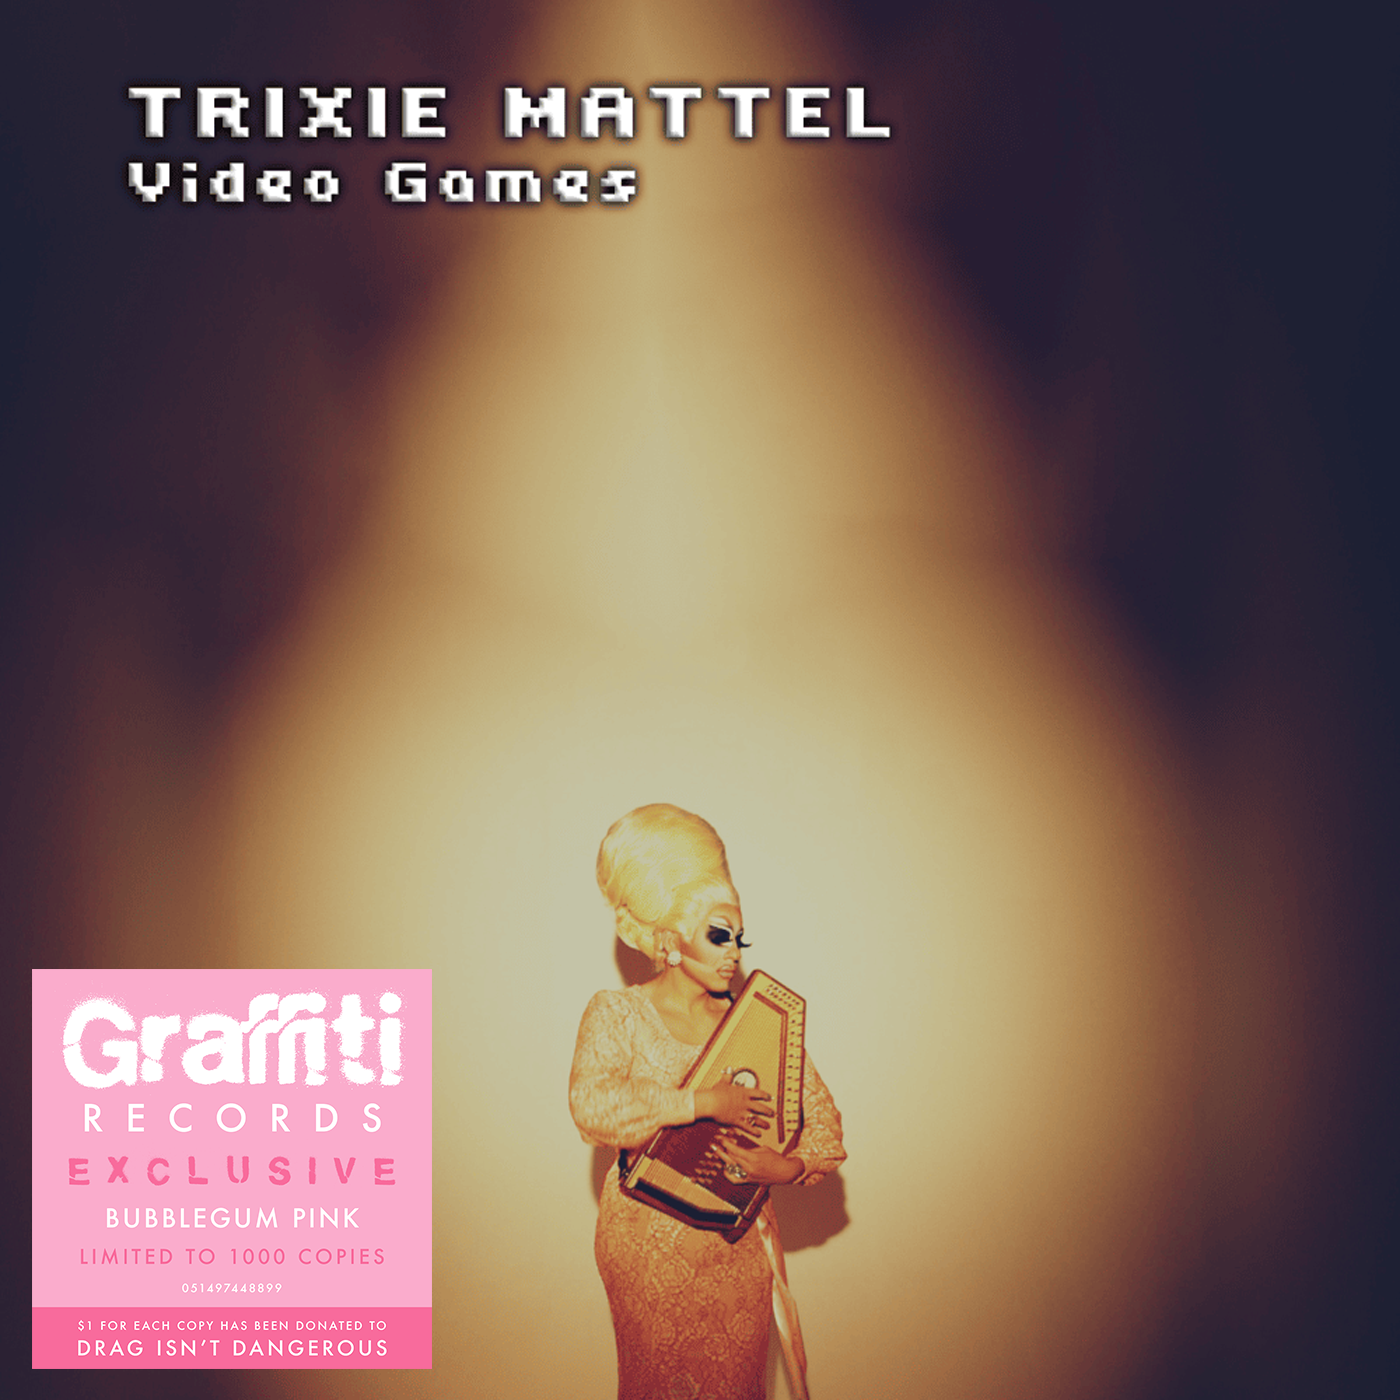 Trixie Mattel - Video Games 7" (Graffiti Records Exclusive)